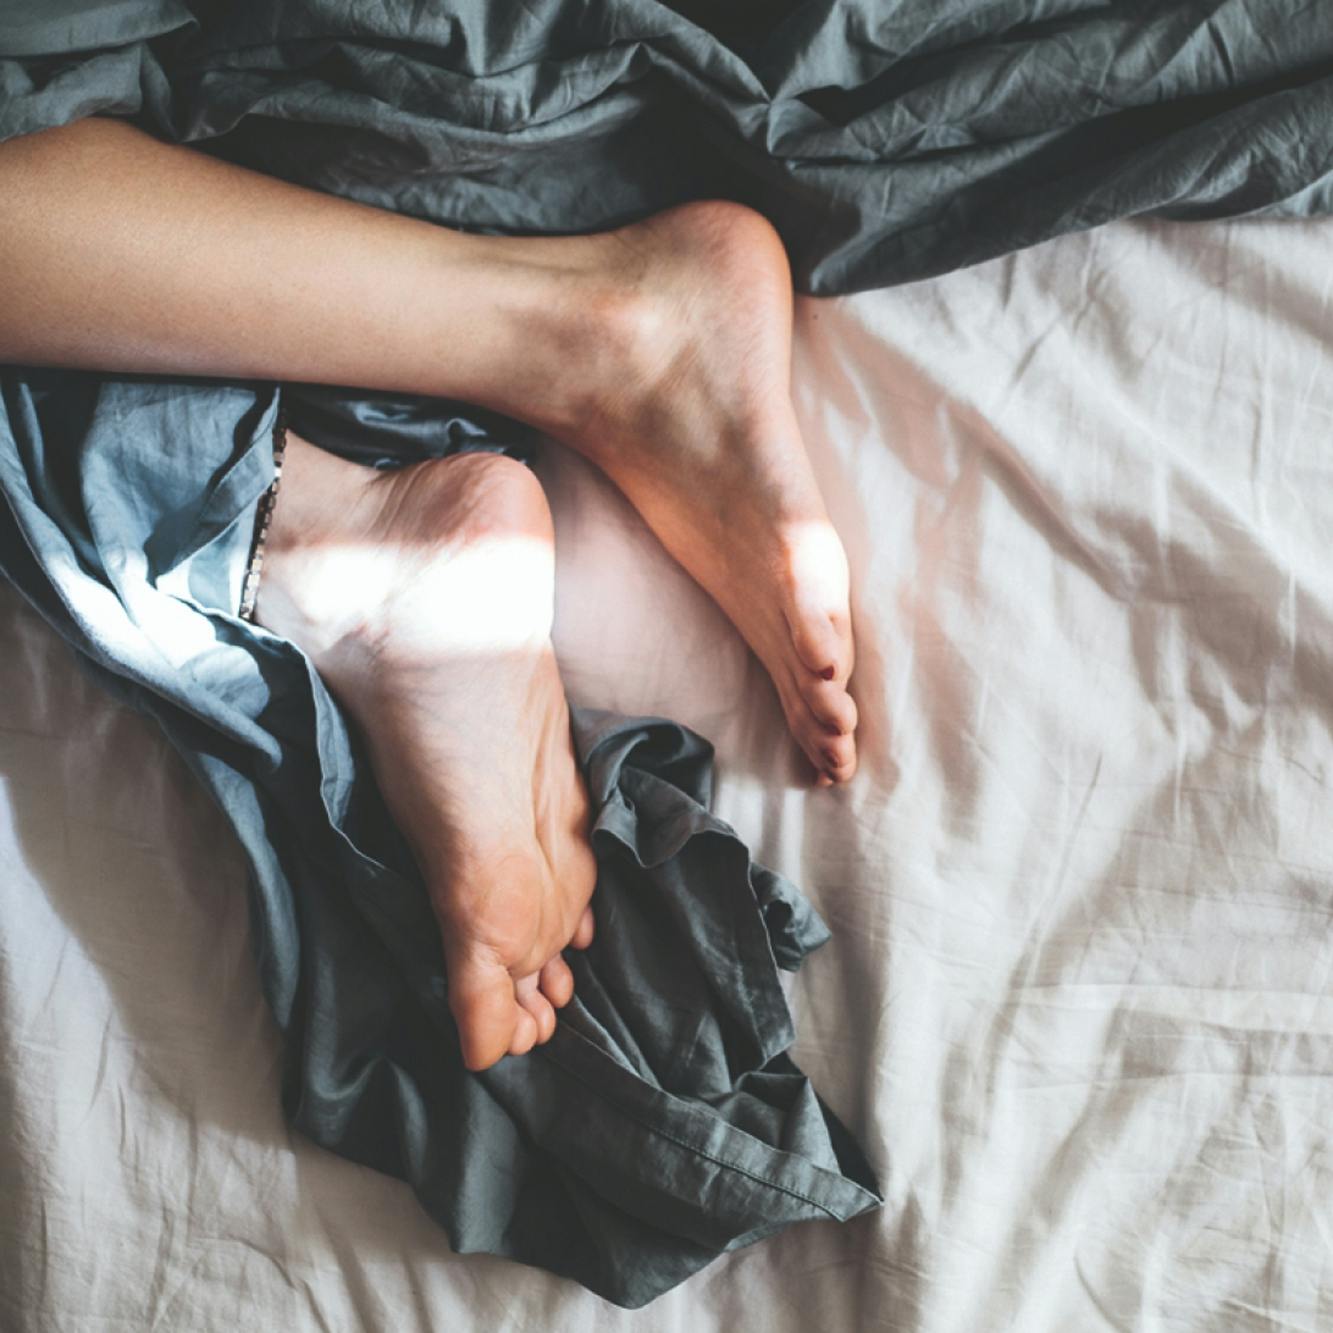 Detailaufnahme: nackte Frauenfüße auf einem Bett in gemütlicher Pose © gobiq